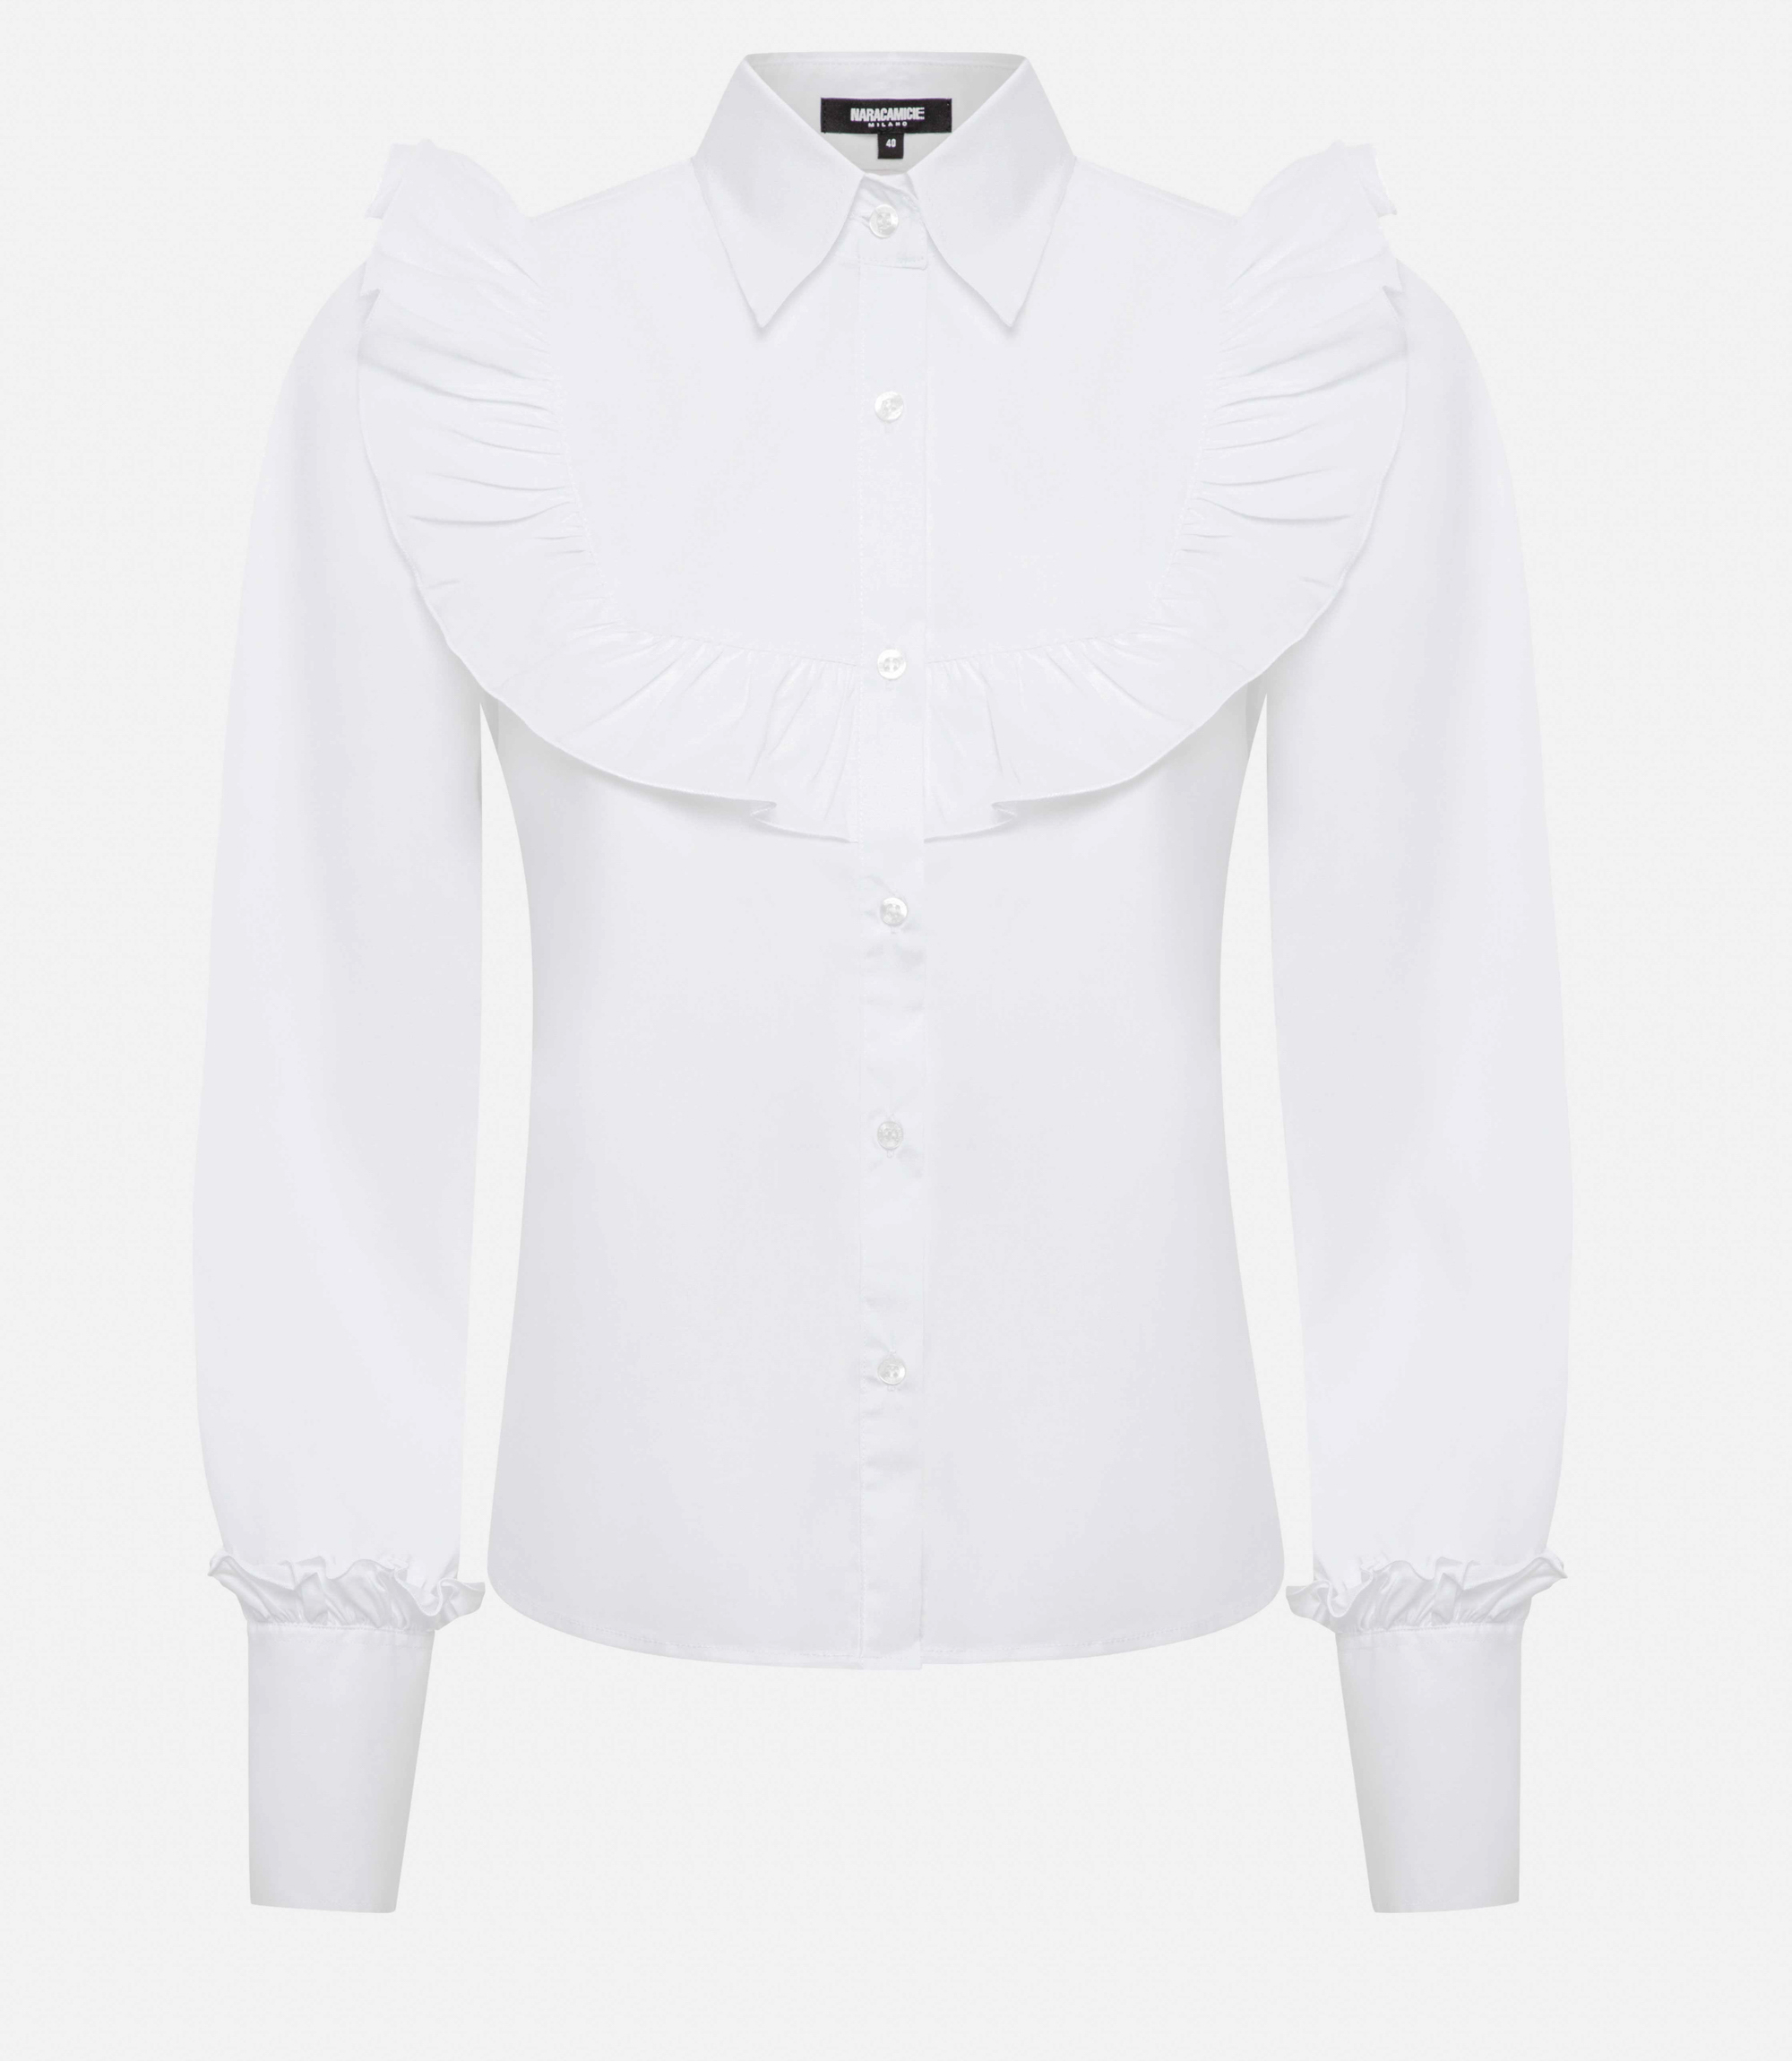 Volant shirt - White - Nara Milano